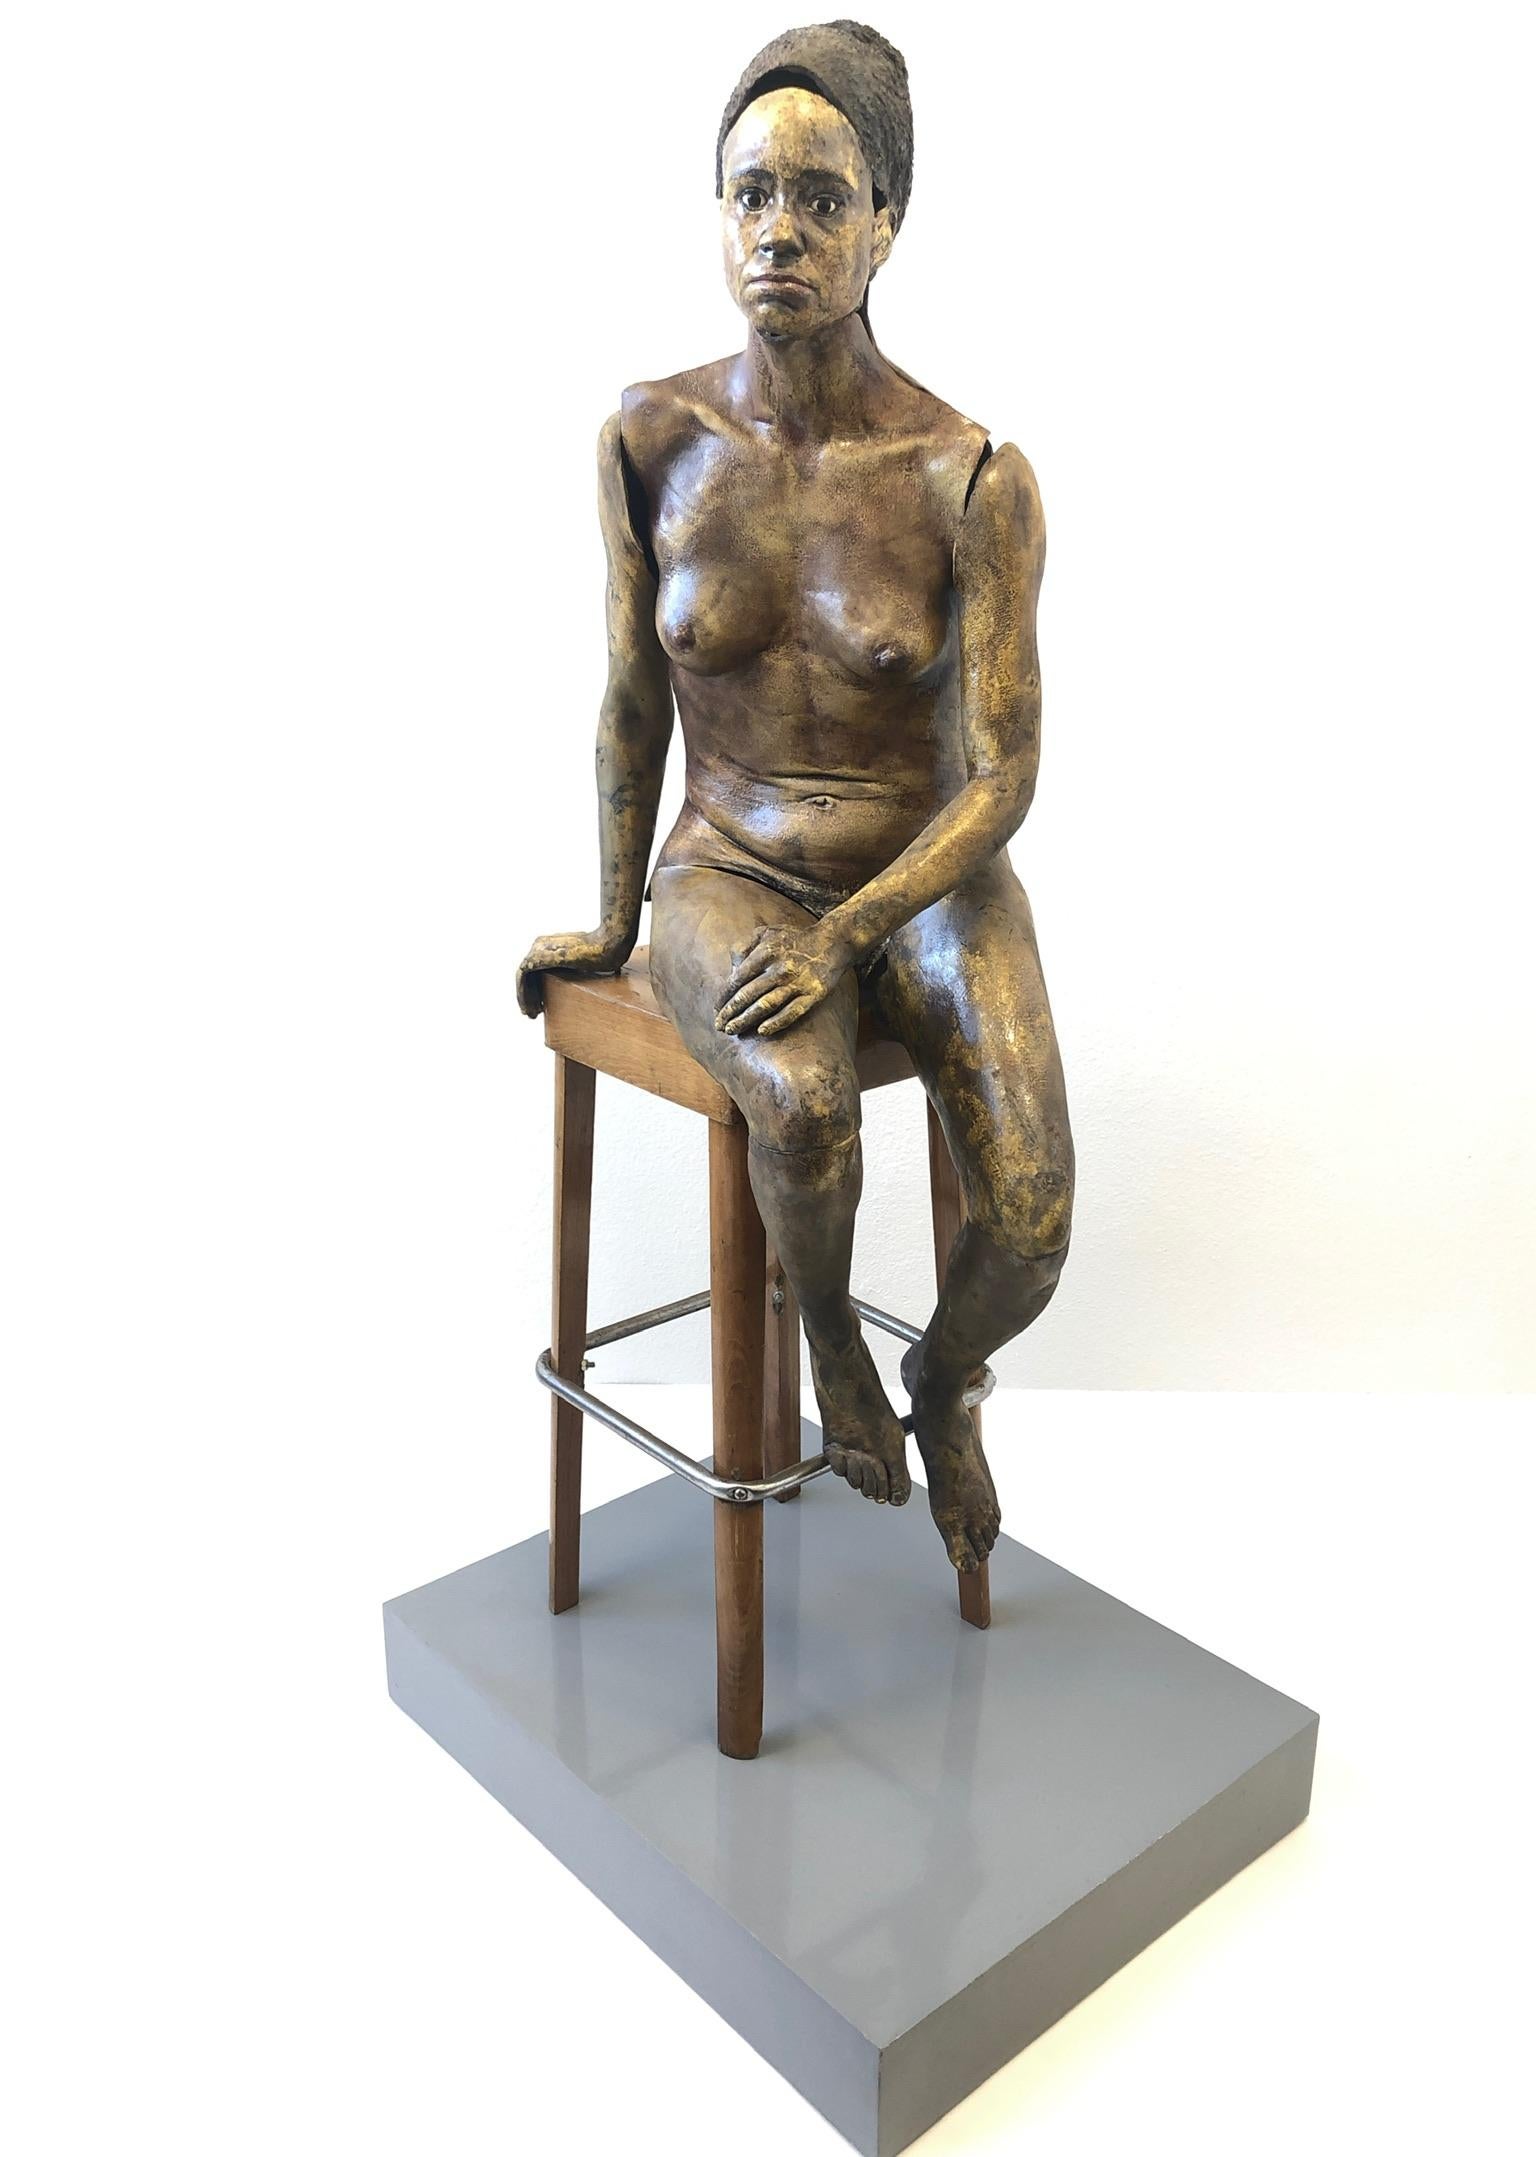 sculpture de nu féminin en céramique Raku des années 1980, grandeur nature, réalisée par la sculptrice américaine Eva Stettner.
Réalisé en céramique émaillée à basse température, le tabouret est en bois laqué avec un repose-pieds chromé et la base